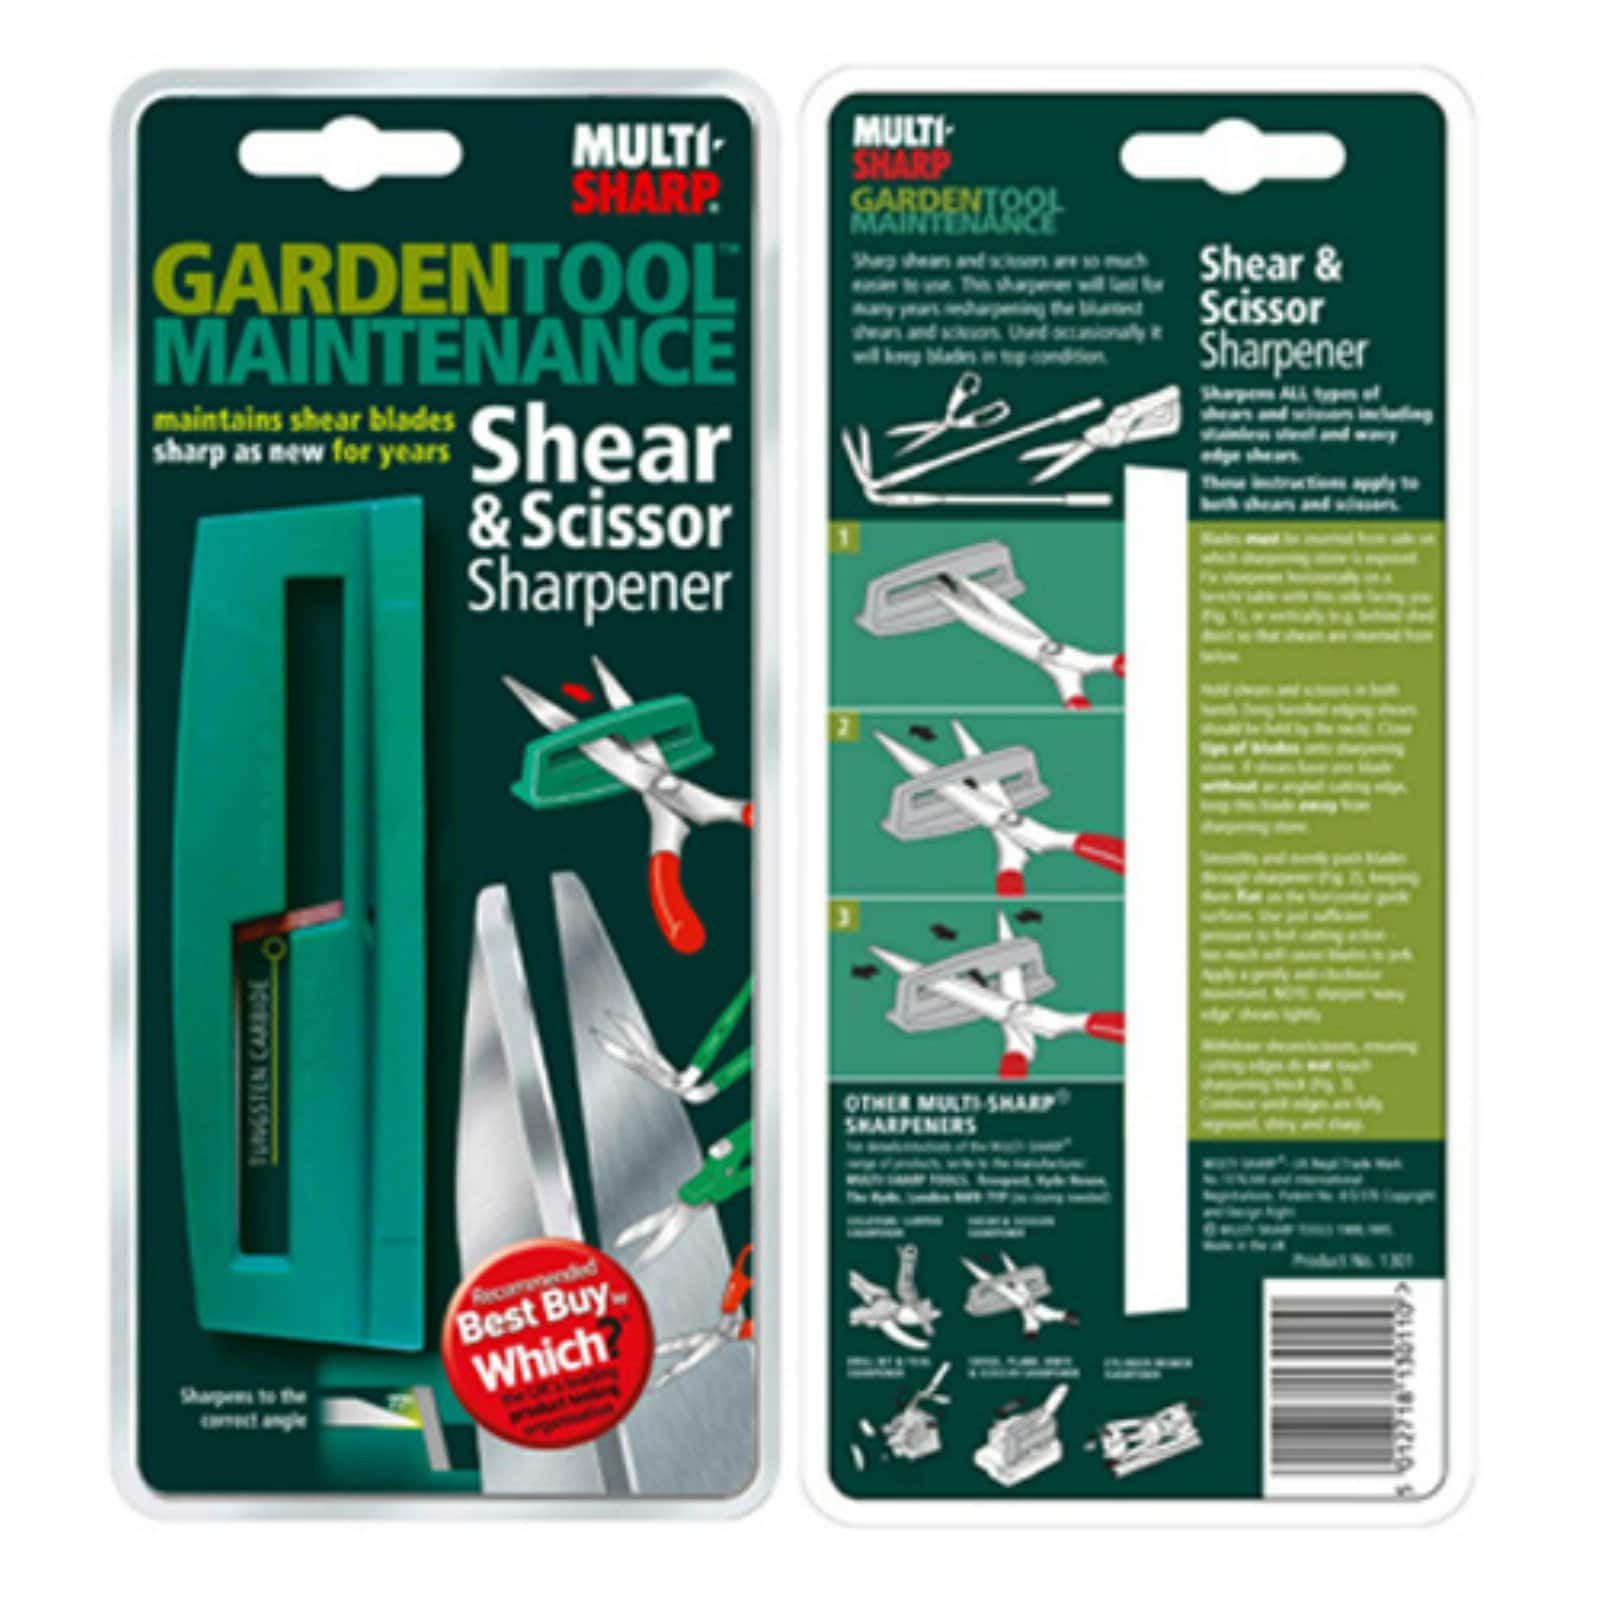 Multi Sharp R310 Shear & Scissor Sharpener